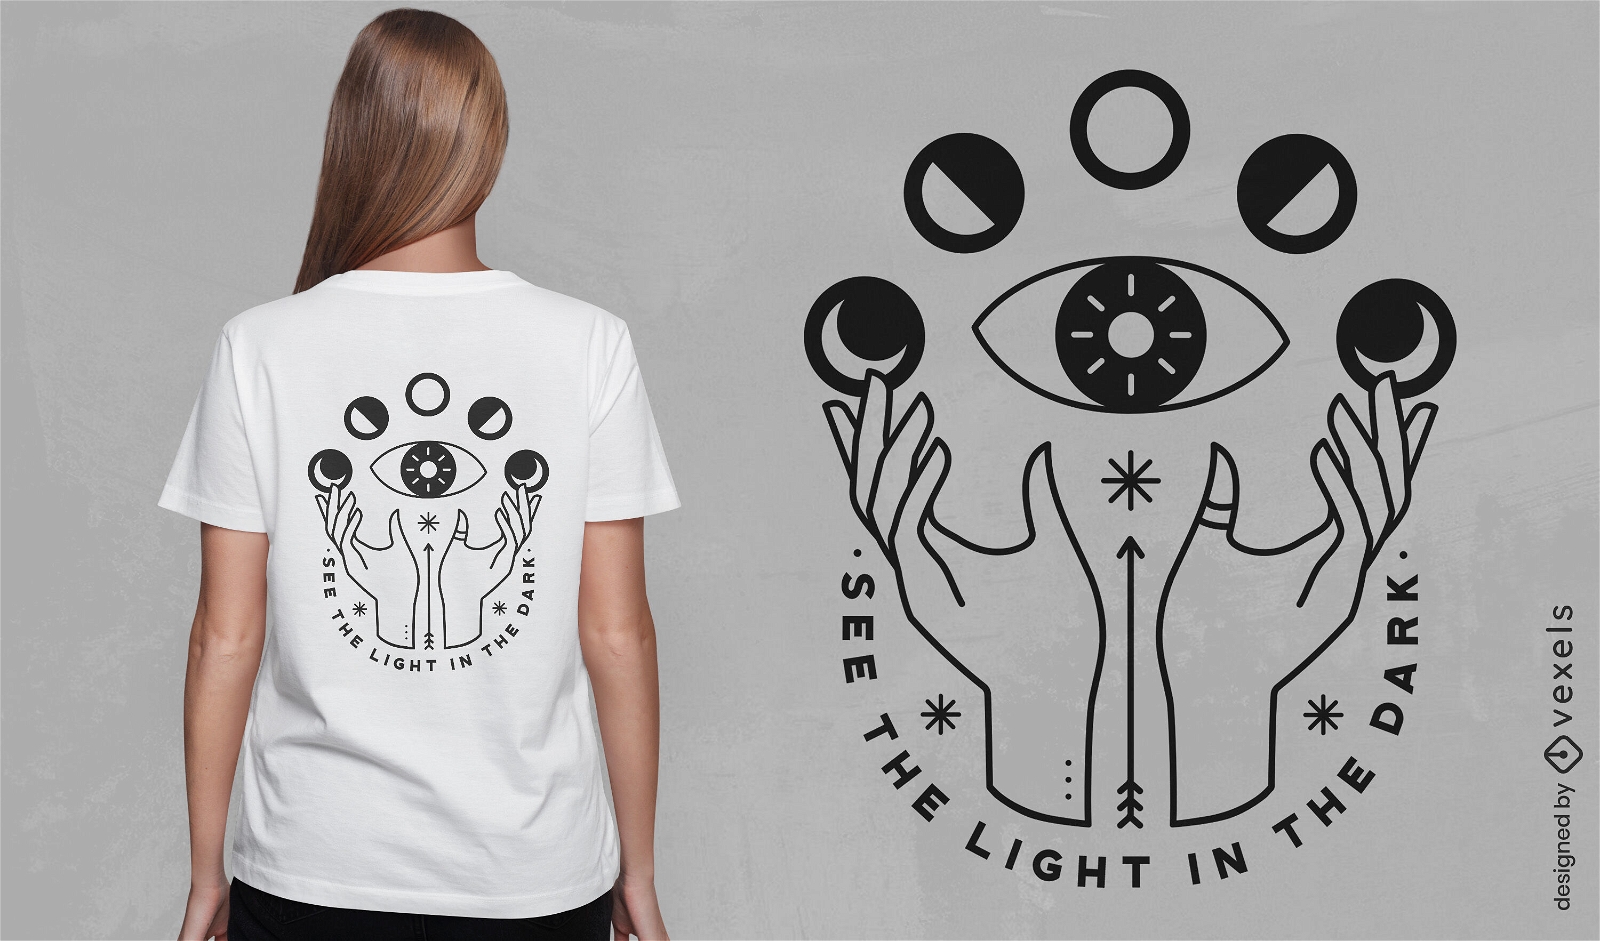 Sehen Sie das Licht im dunklen esoterischen T-Shirt-Design